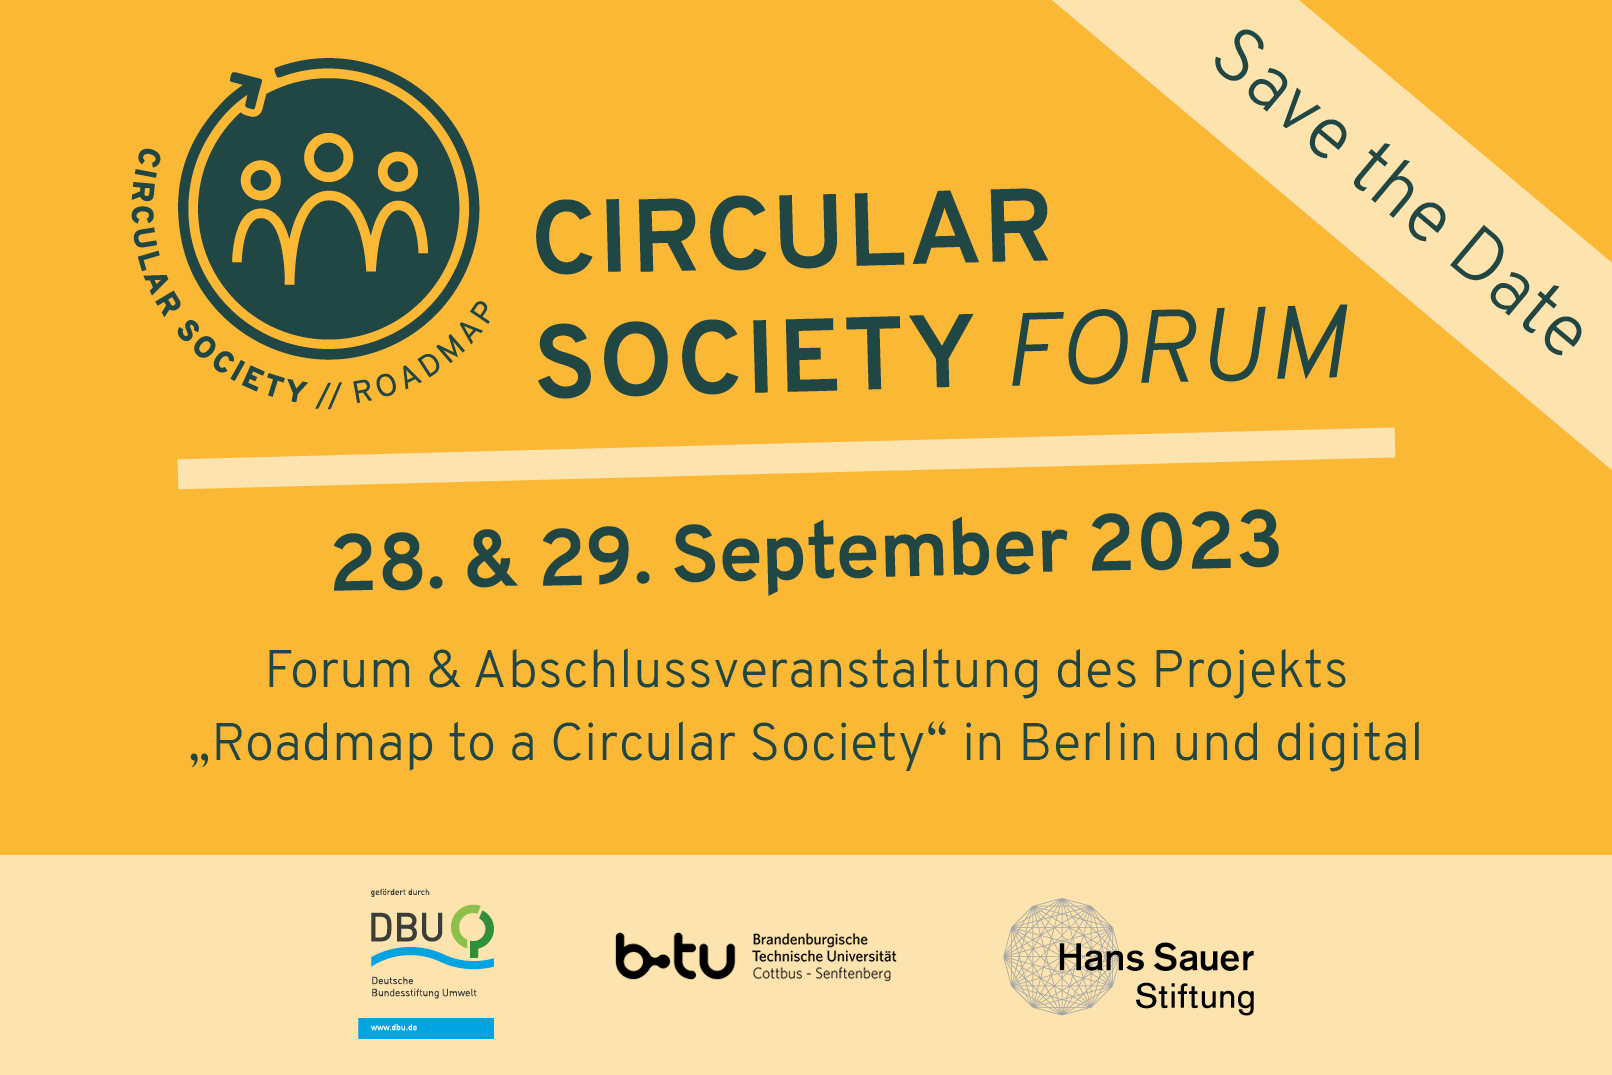 Am 28. und 29. September 2023 findet das 3. Circular Society Forum statt, digital und in Berlin.